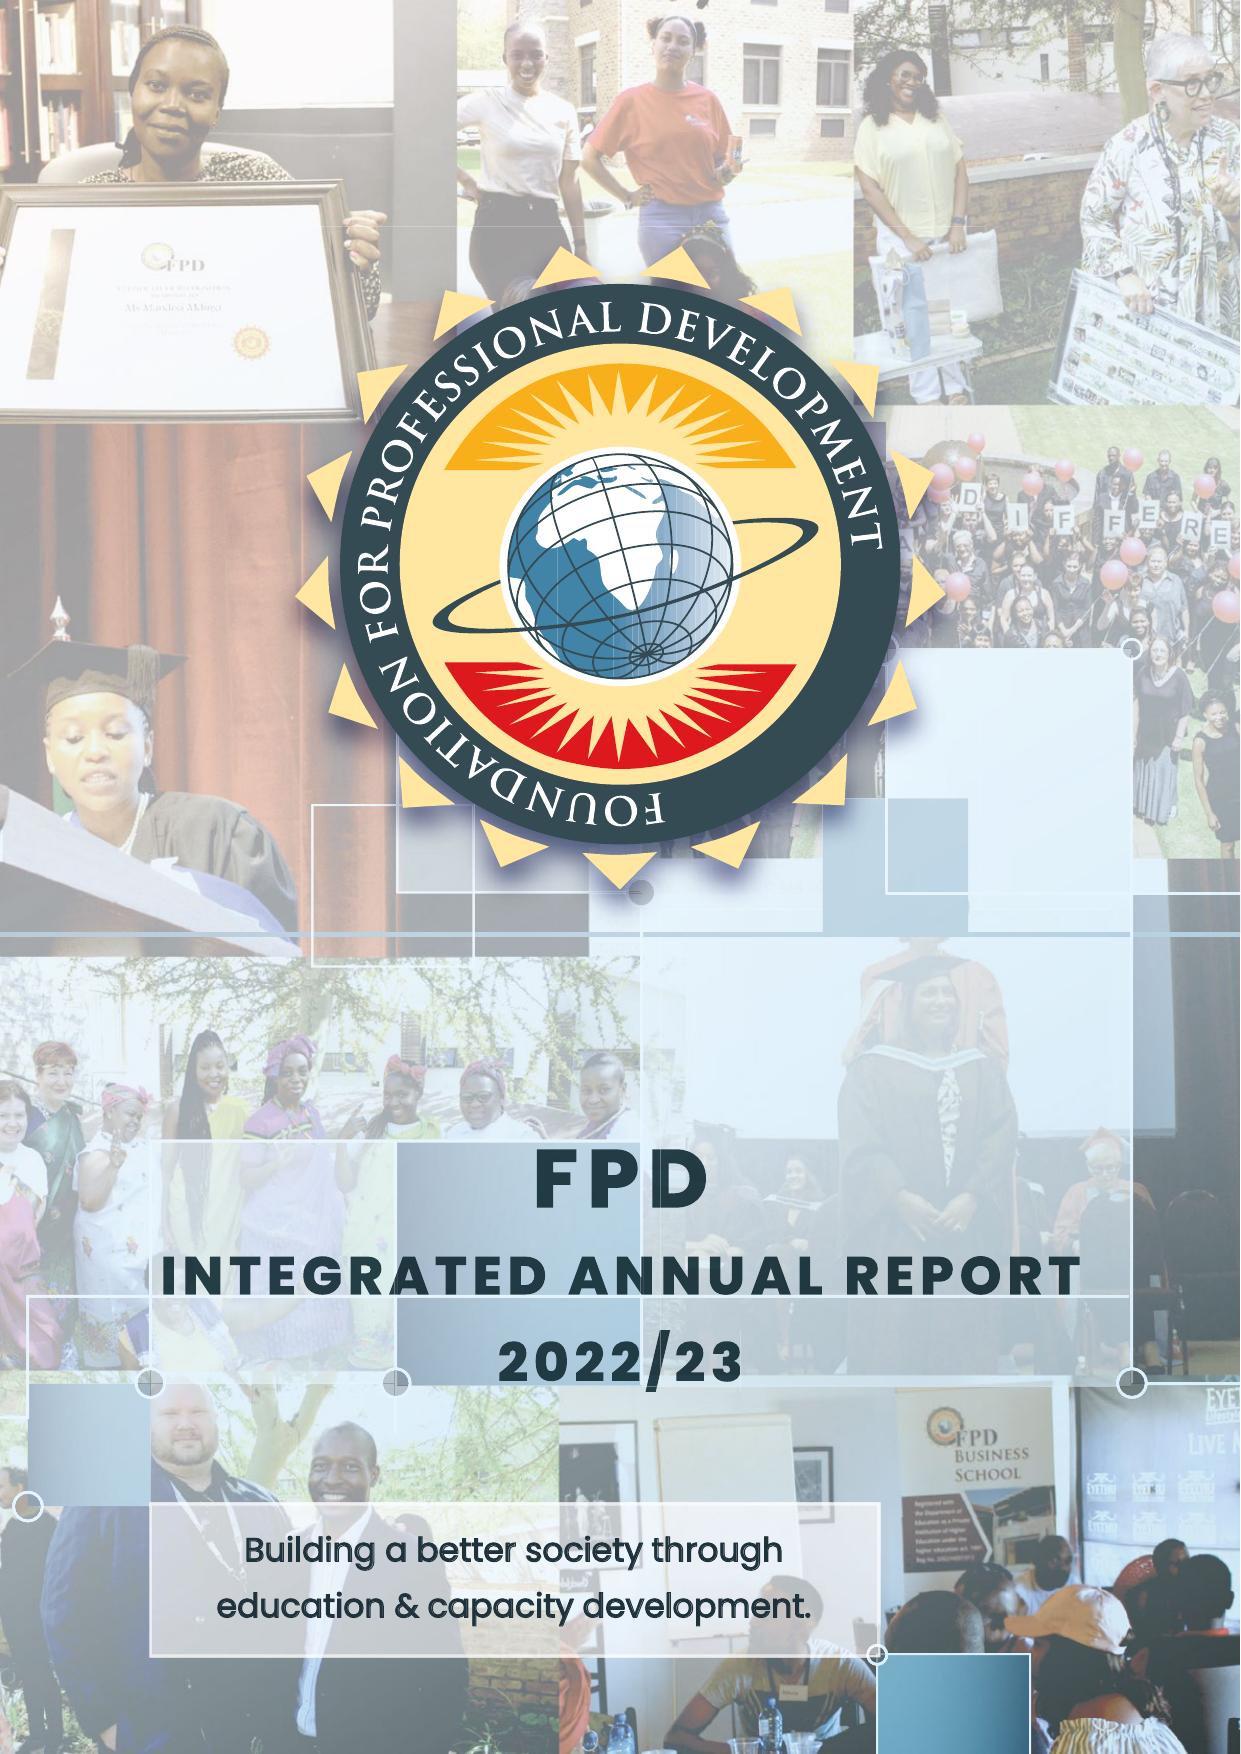 SUMOPAYROLL 2022 Annual Report